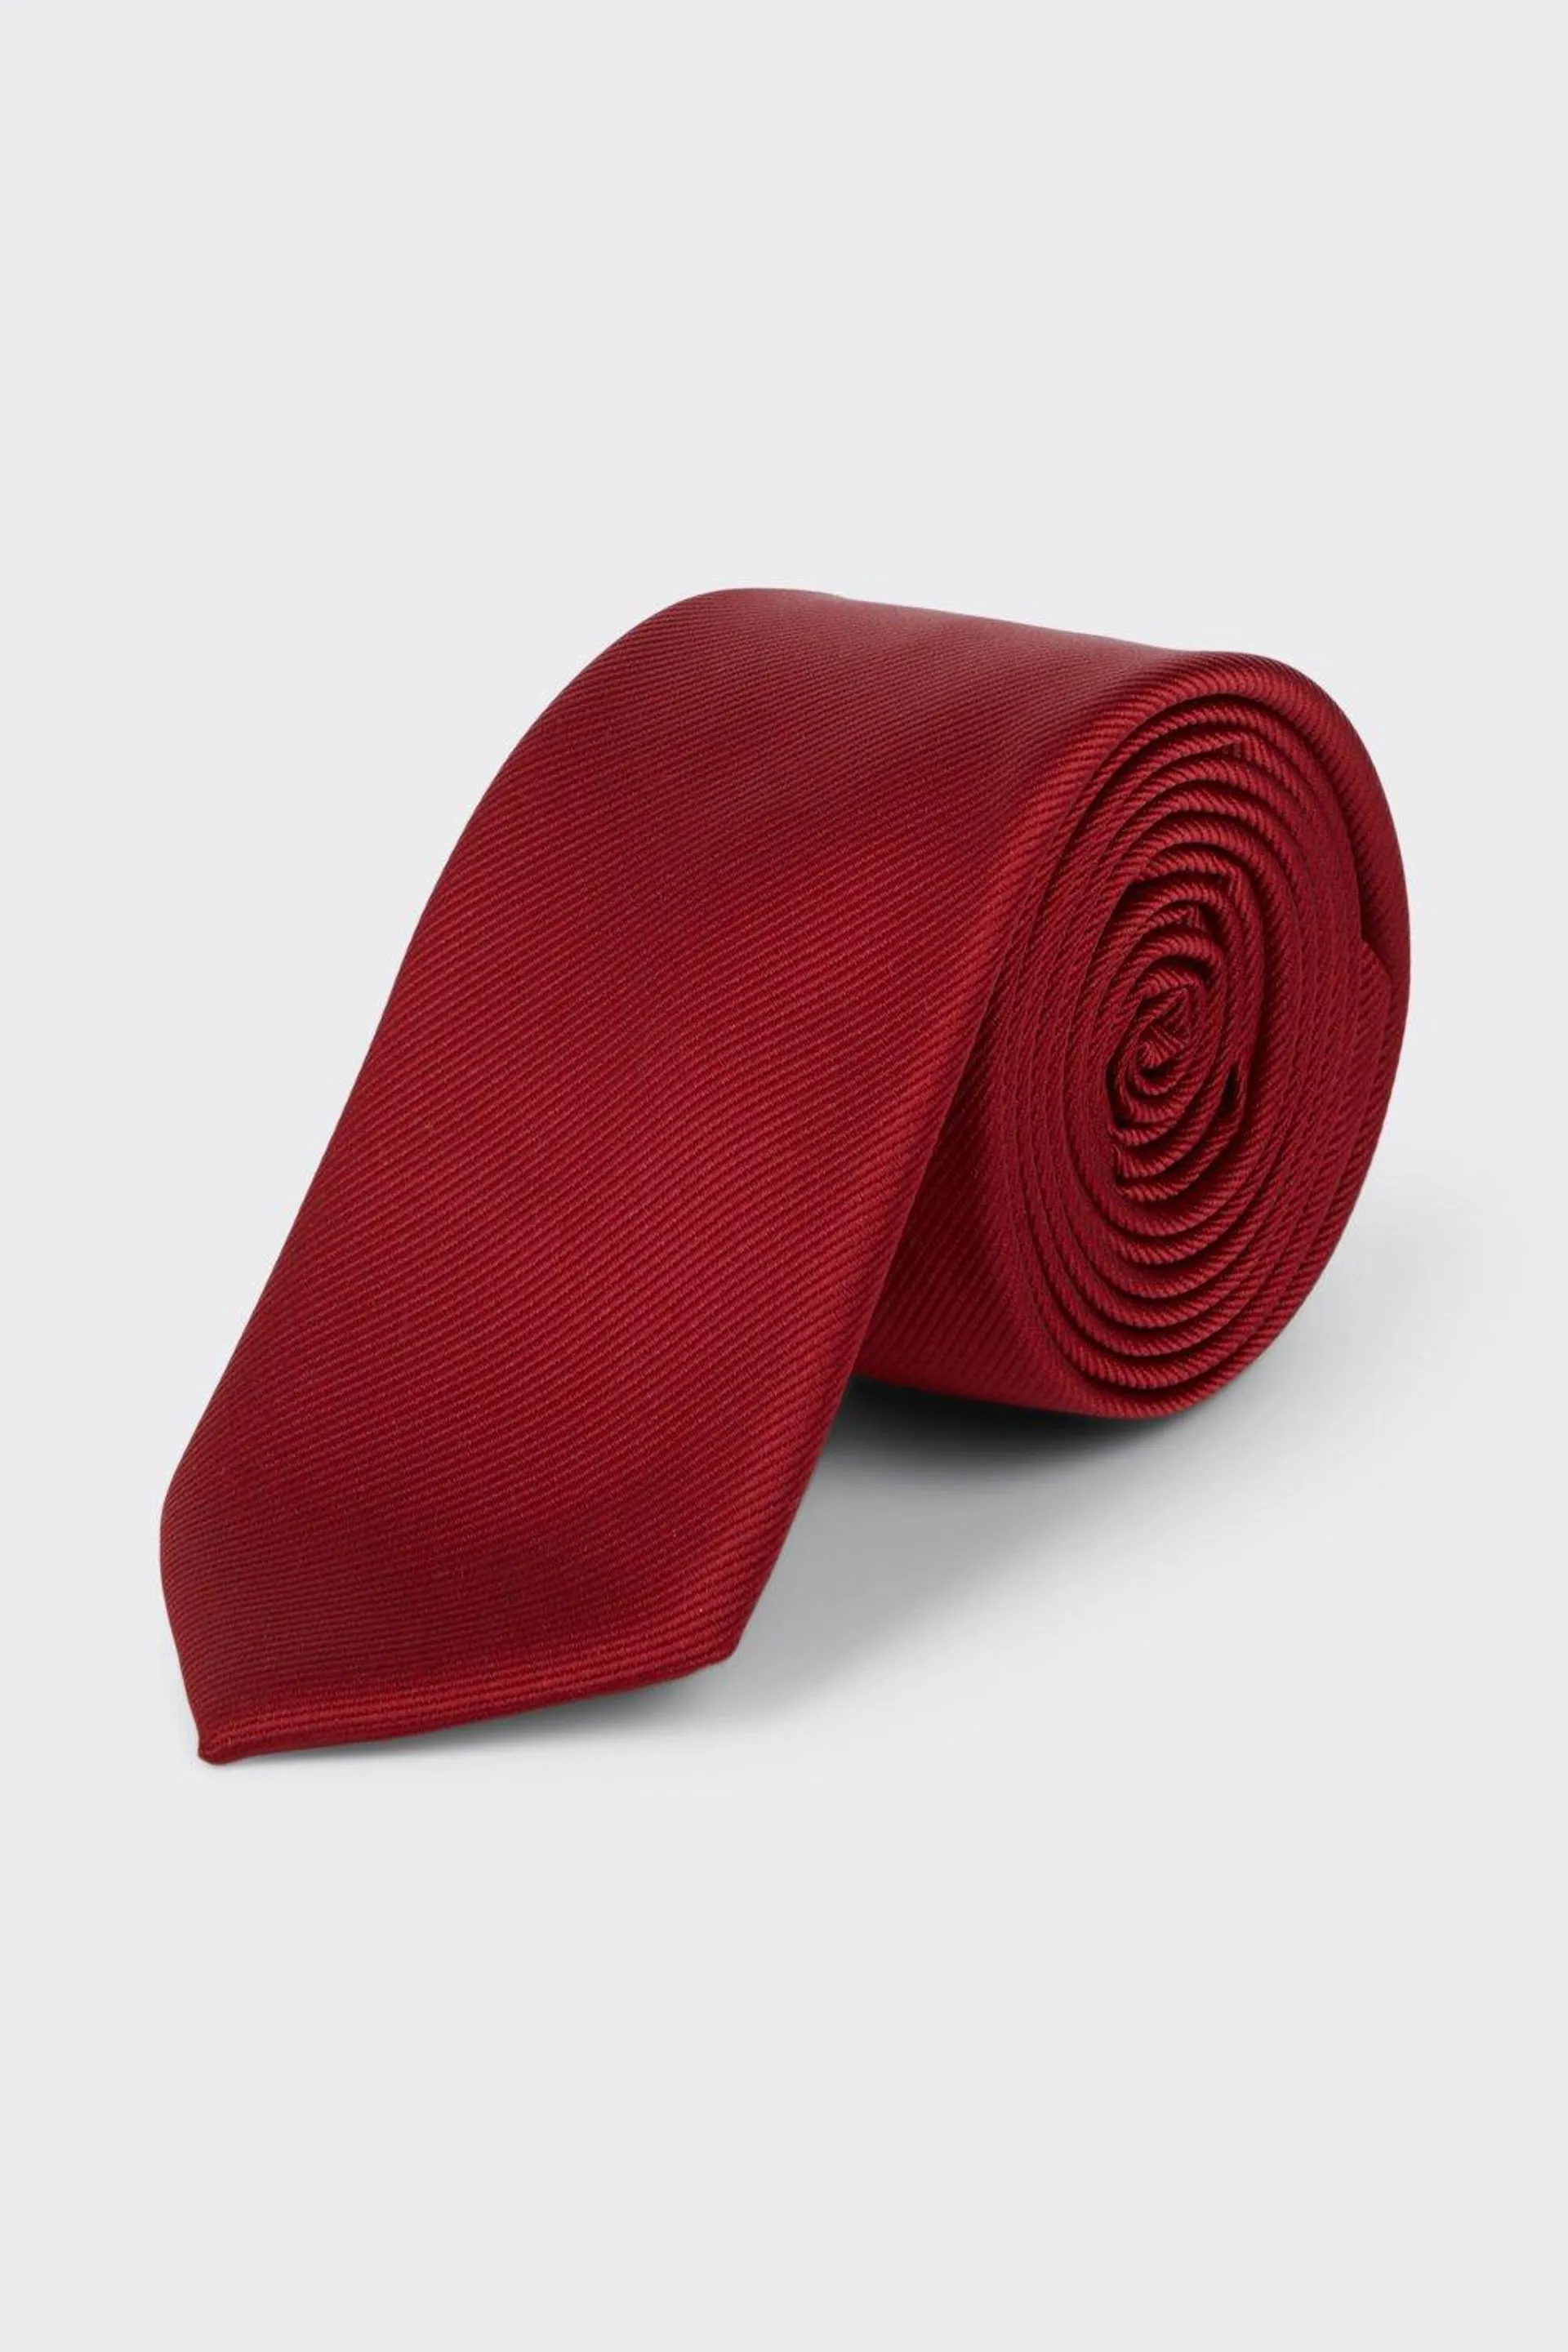 Slim Dark Red Tie